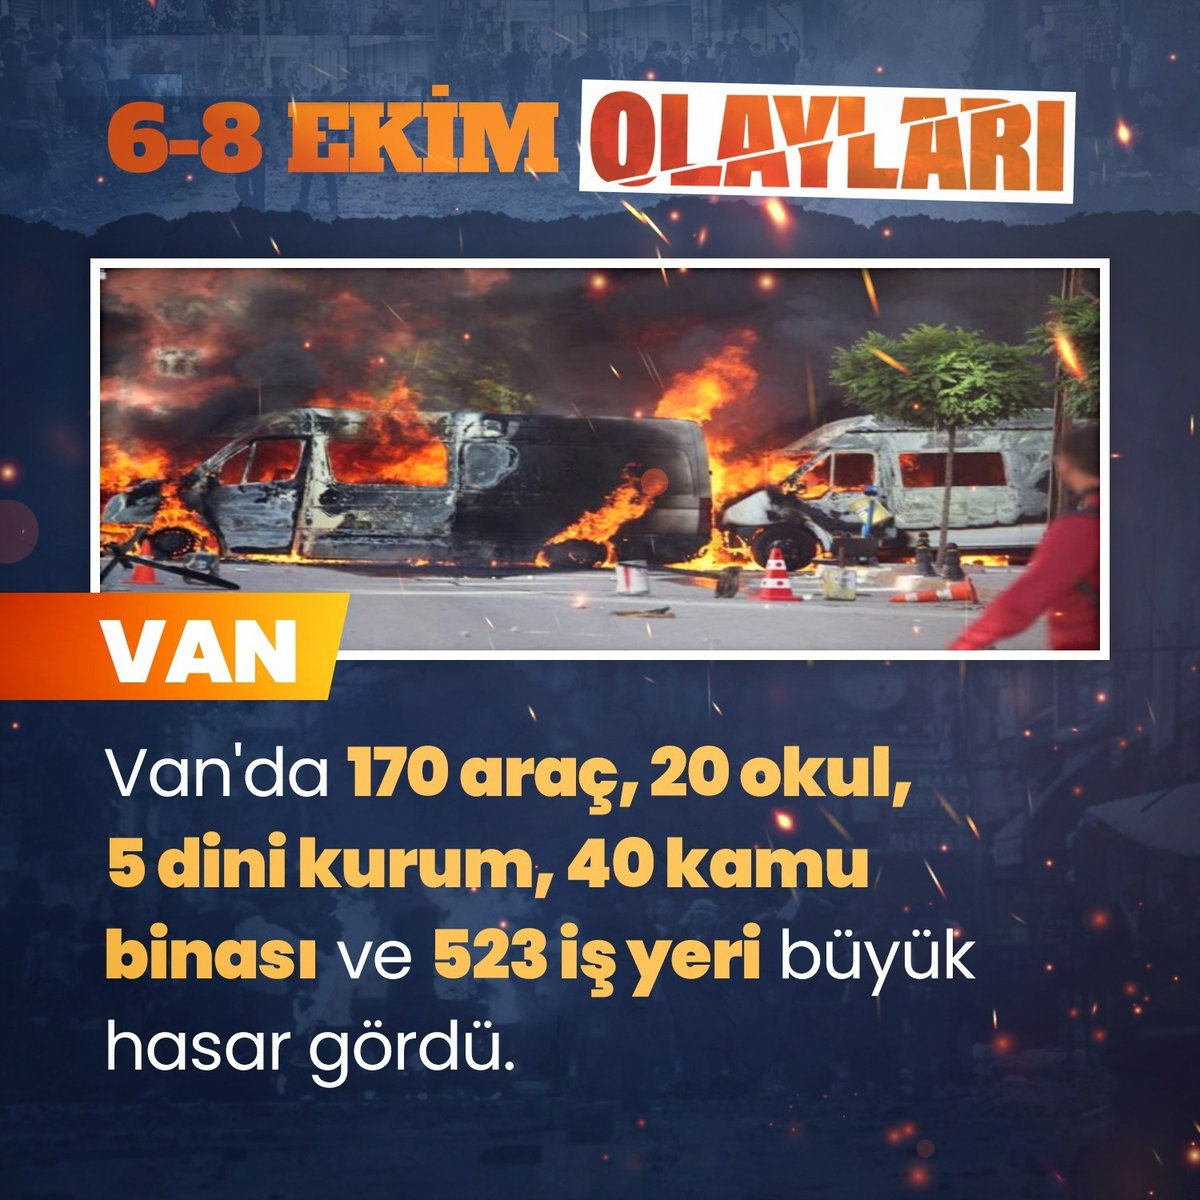 Unutmadık! 6 8 Ekim Olayları'nda (Kobani Terör Kalkışması) terör örgütü elebaşlarının sokak çağrıları üzerine Van'da; 170 araç, 20 okul, 5 dini kurum, 40 kamu binası ve 523 iş yeri büyük hasar görmüştü.